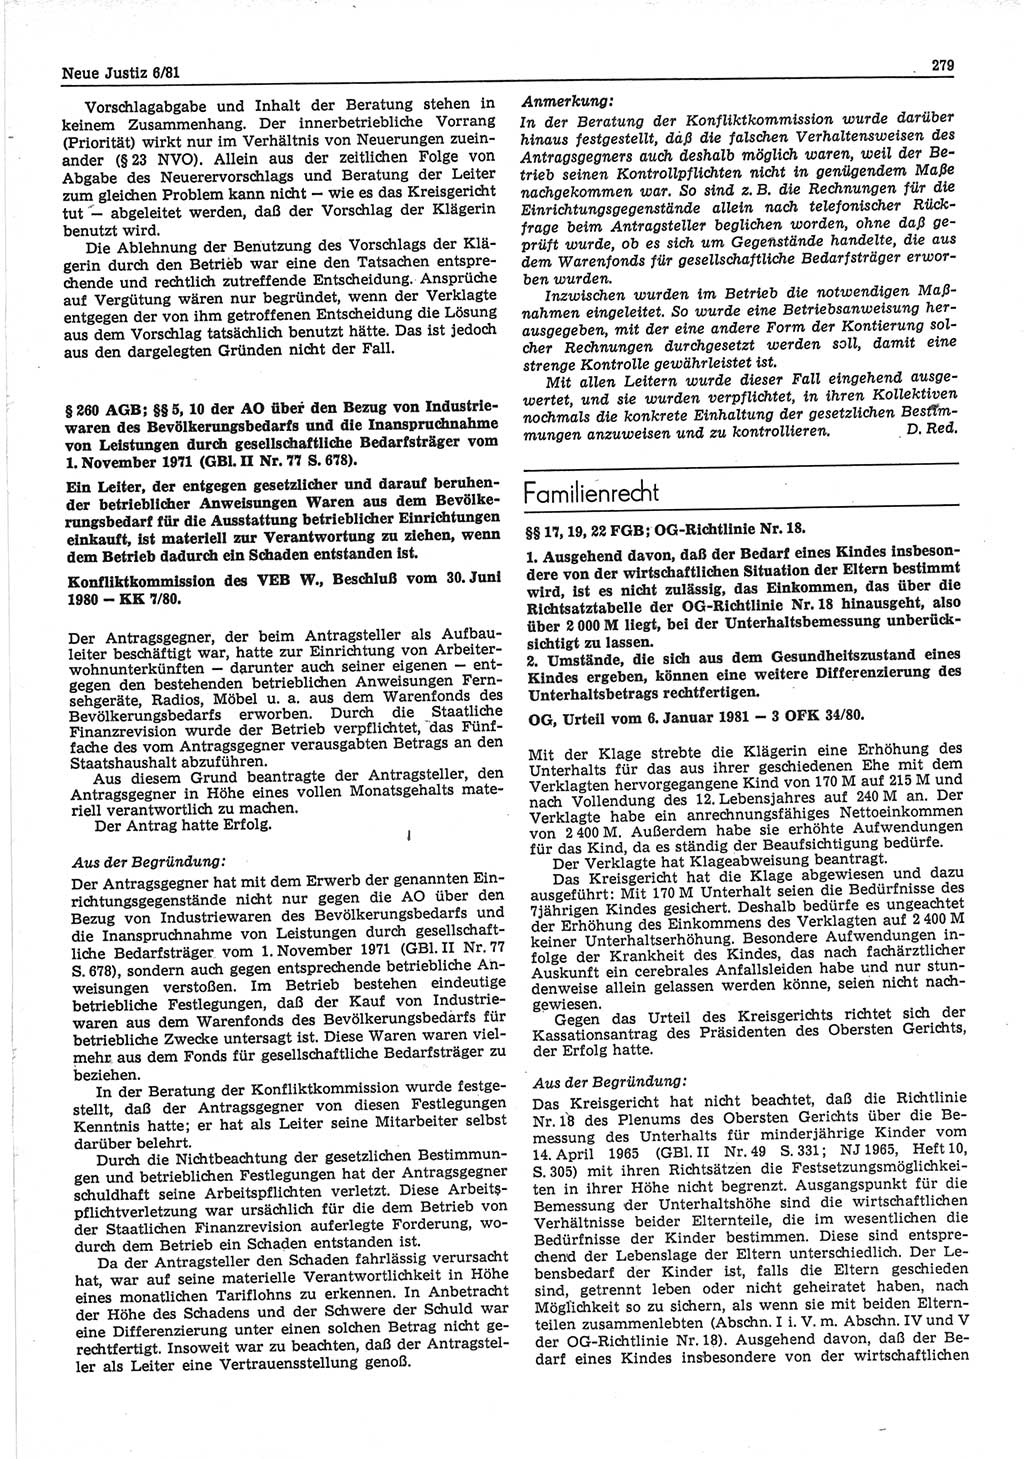 Neue Justiz (NJ), Zeitschrift für sozialistisches Recht und Gesetzlichkeit [Deutsche Demokratische Republik (DDR)], 35. Jahrgang 1981, Seite 279 (NJ DDR 1981, S. 279)